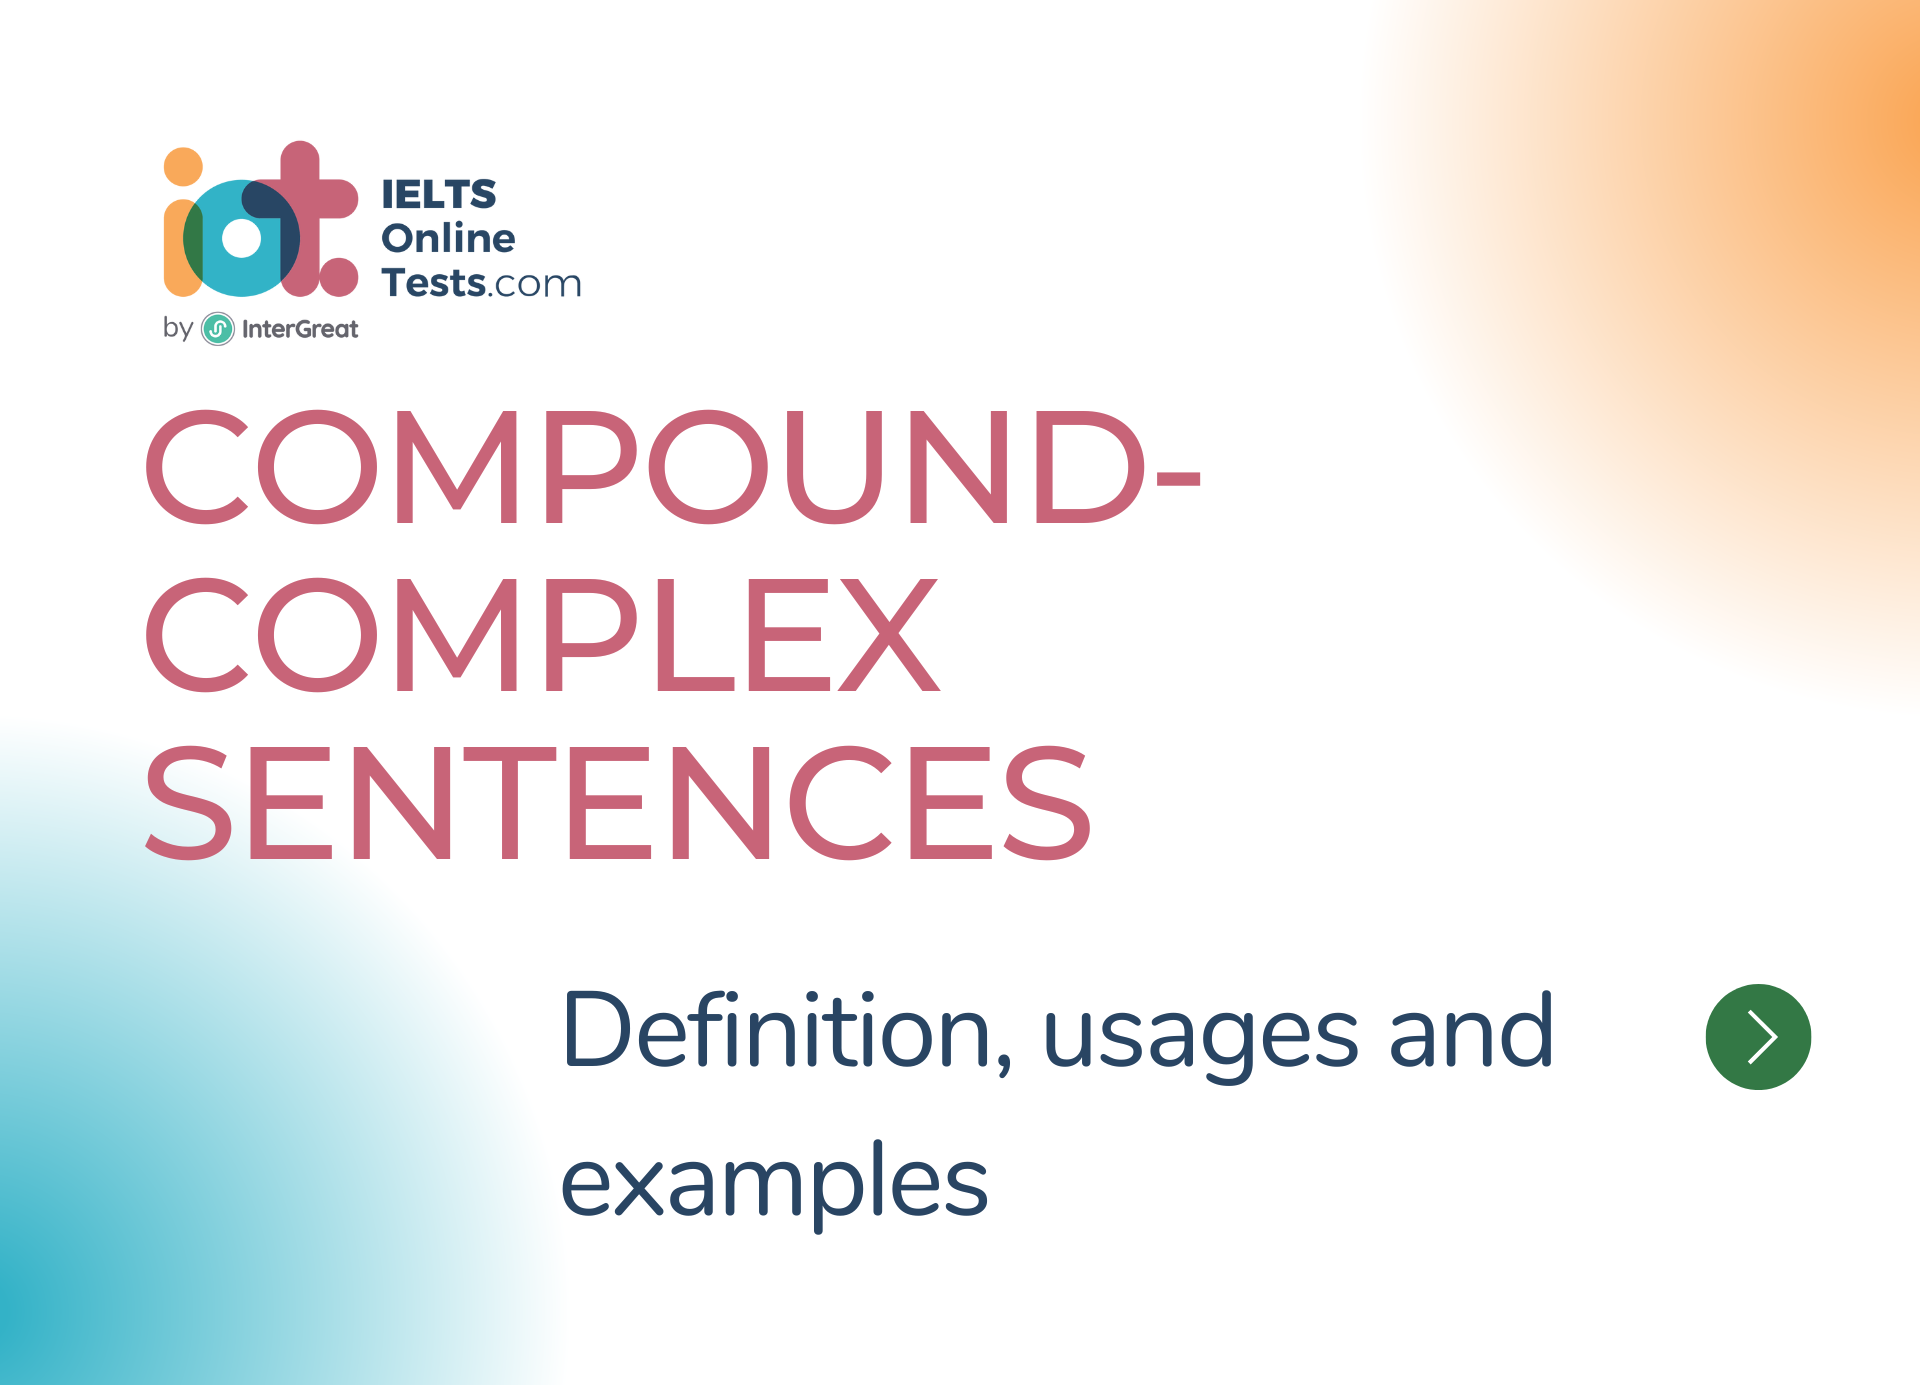 Compound-complex sentences